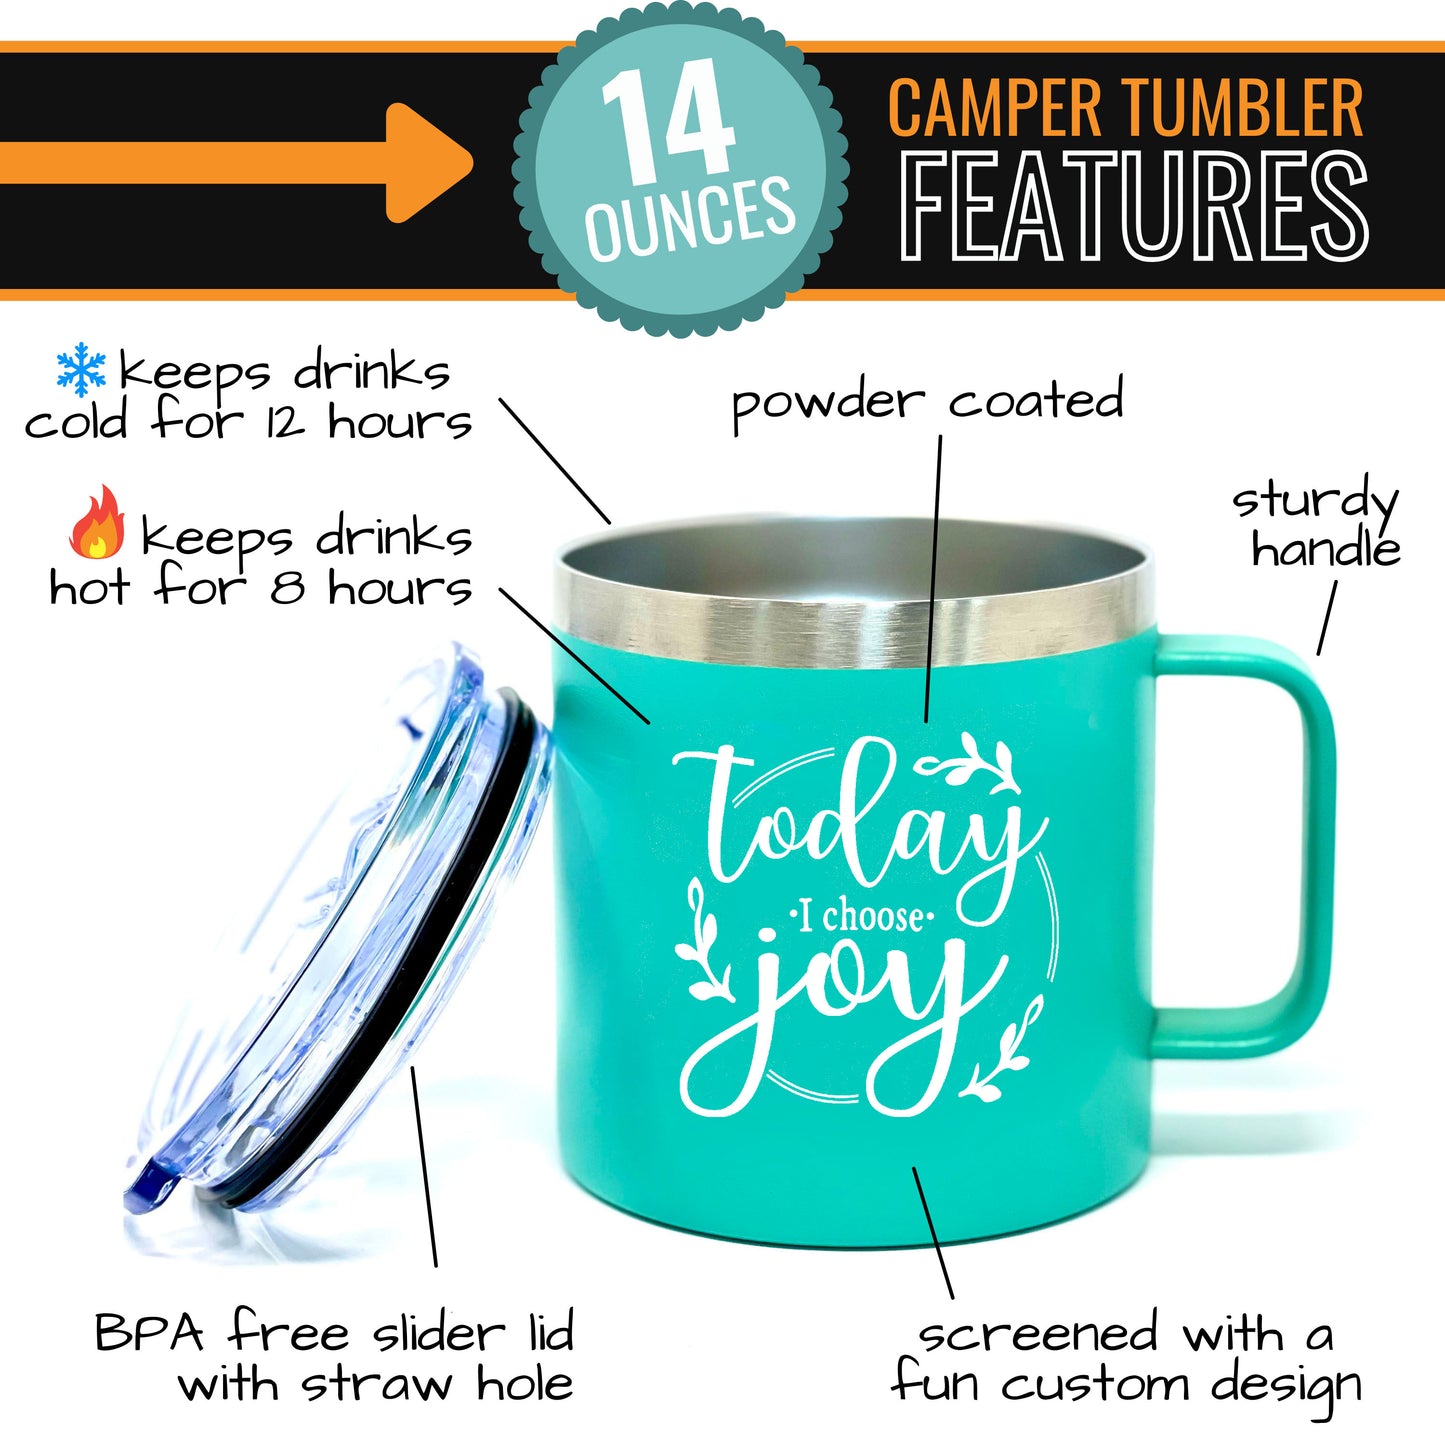 Choose Joy 14 oz Teal Camper Tumbler